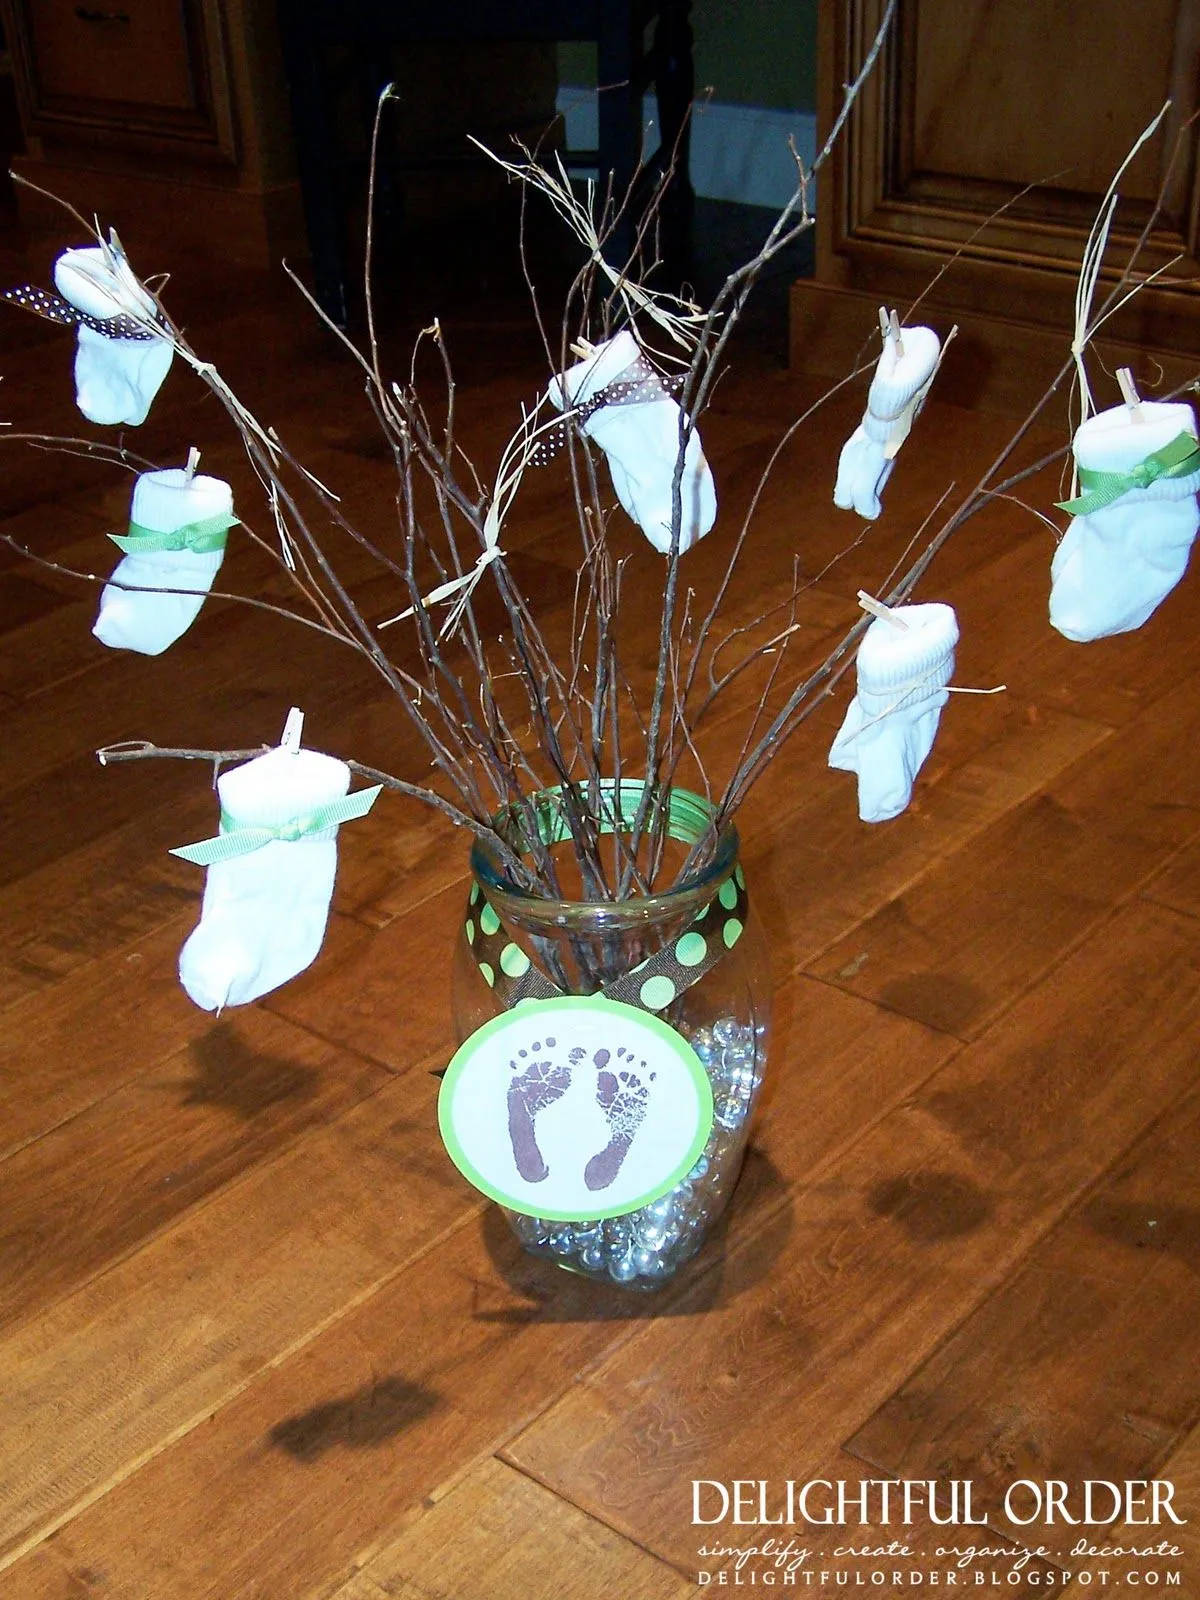 Árboles decorados para baby shower - Imagui